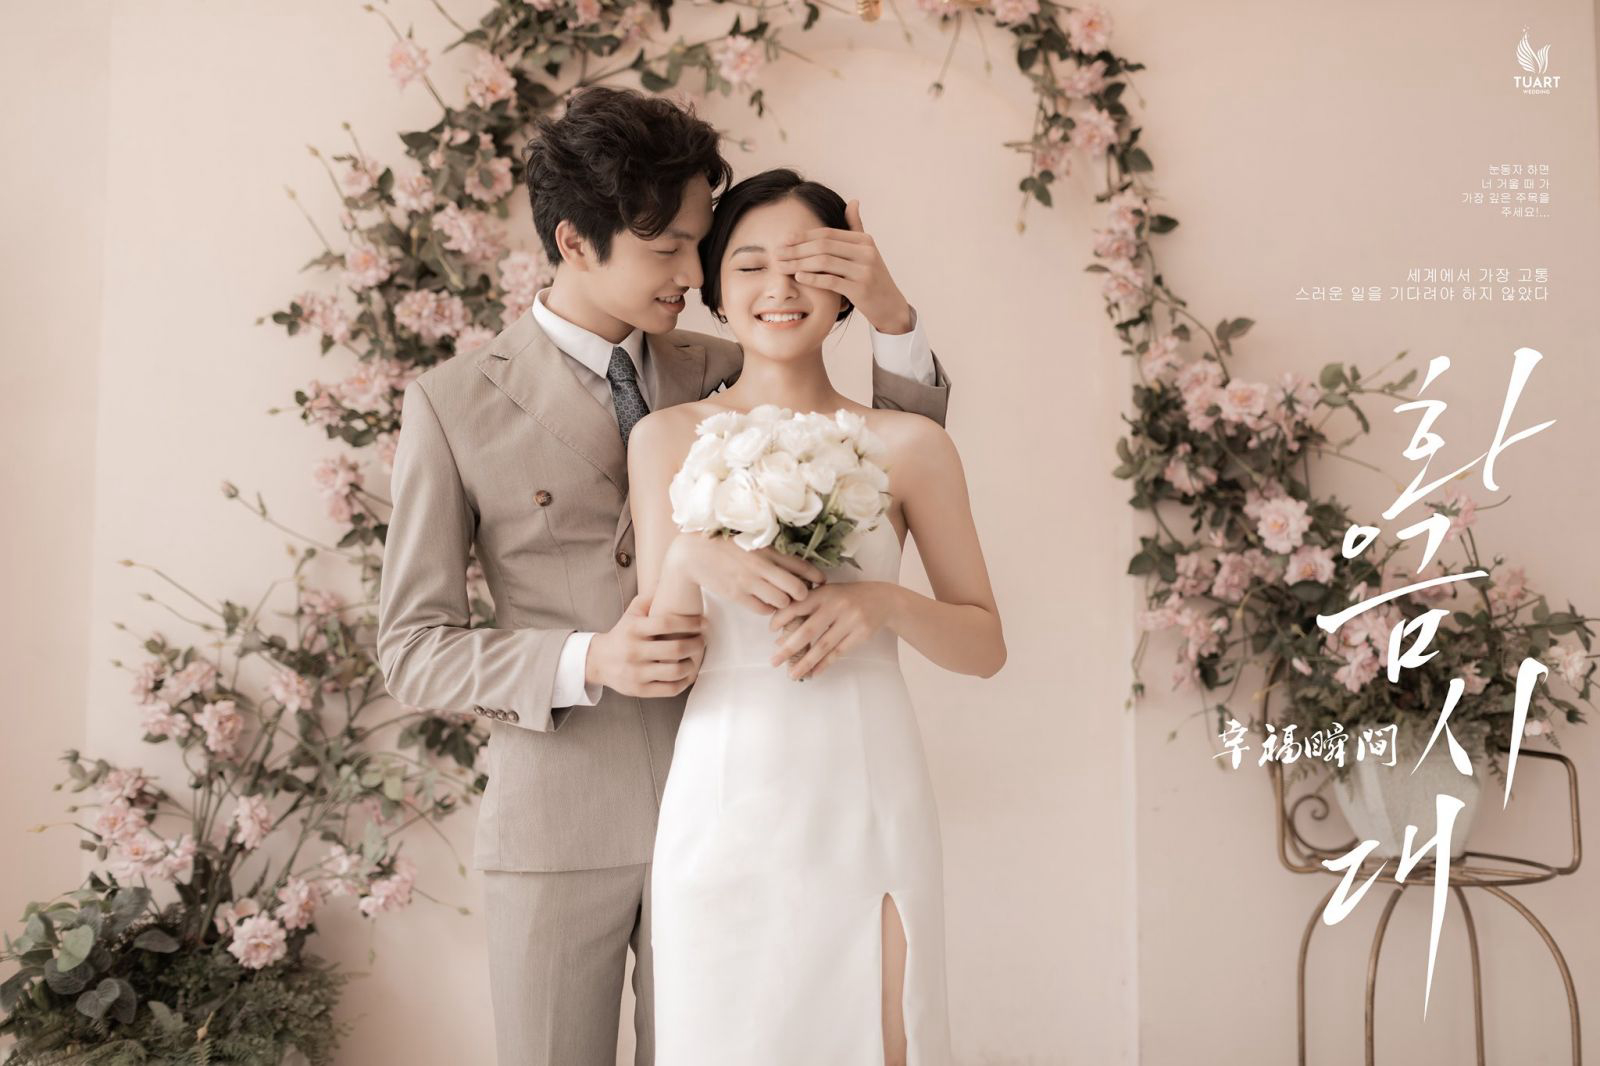 Tiệm Áo Cưới Như Ý - High-end Wedding Studio (2019)